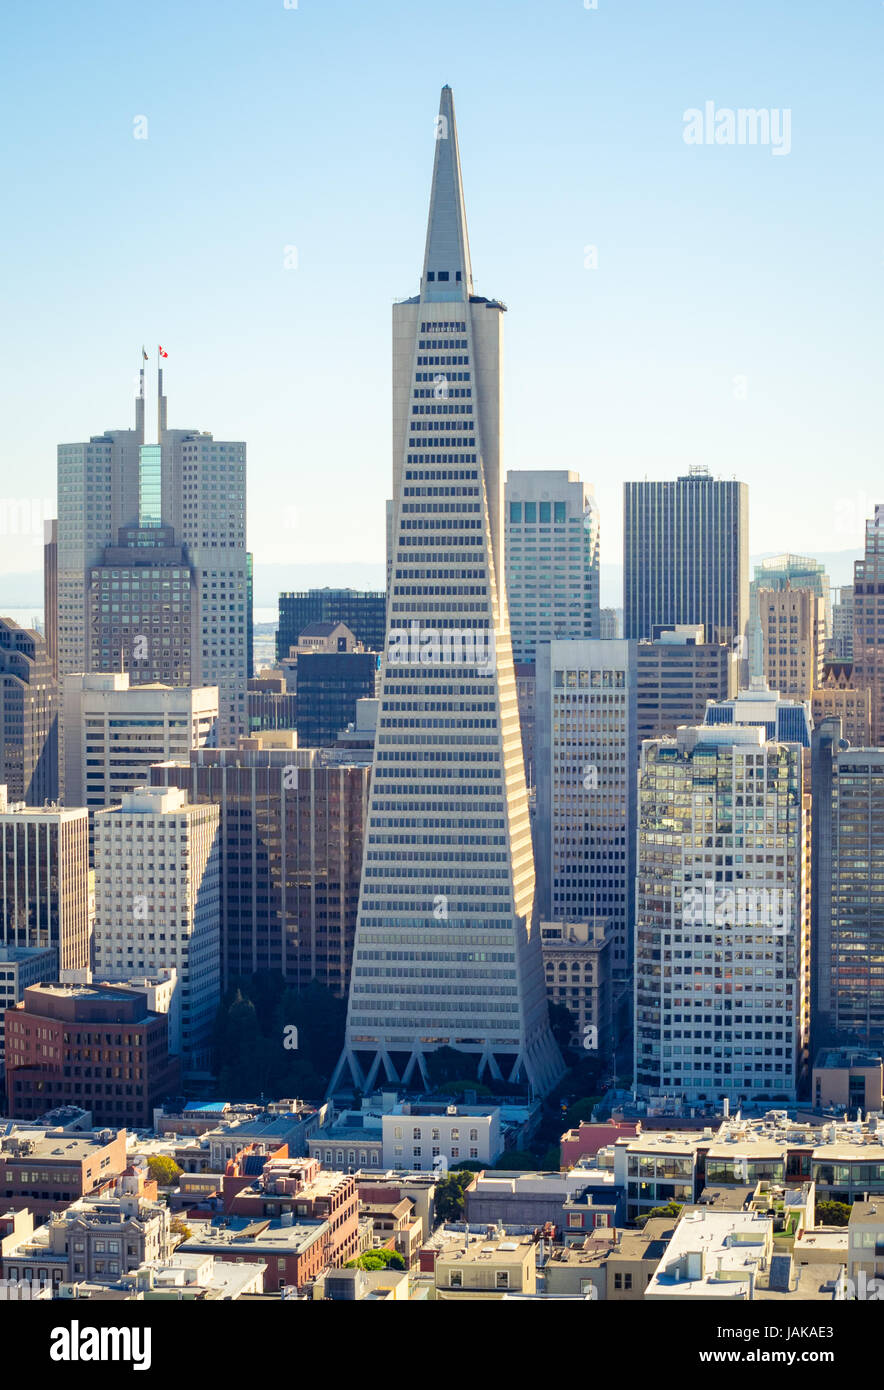 Eine Luftaufnahme der Transamerica Pyramid und den Financial District von San Francisco, Kalifornien, vom Coit Tower auf dem Telegraph Hill gesehen. Stockfoto